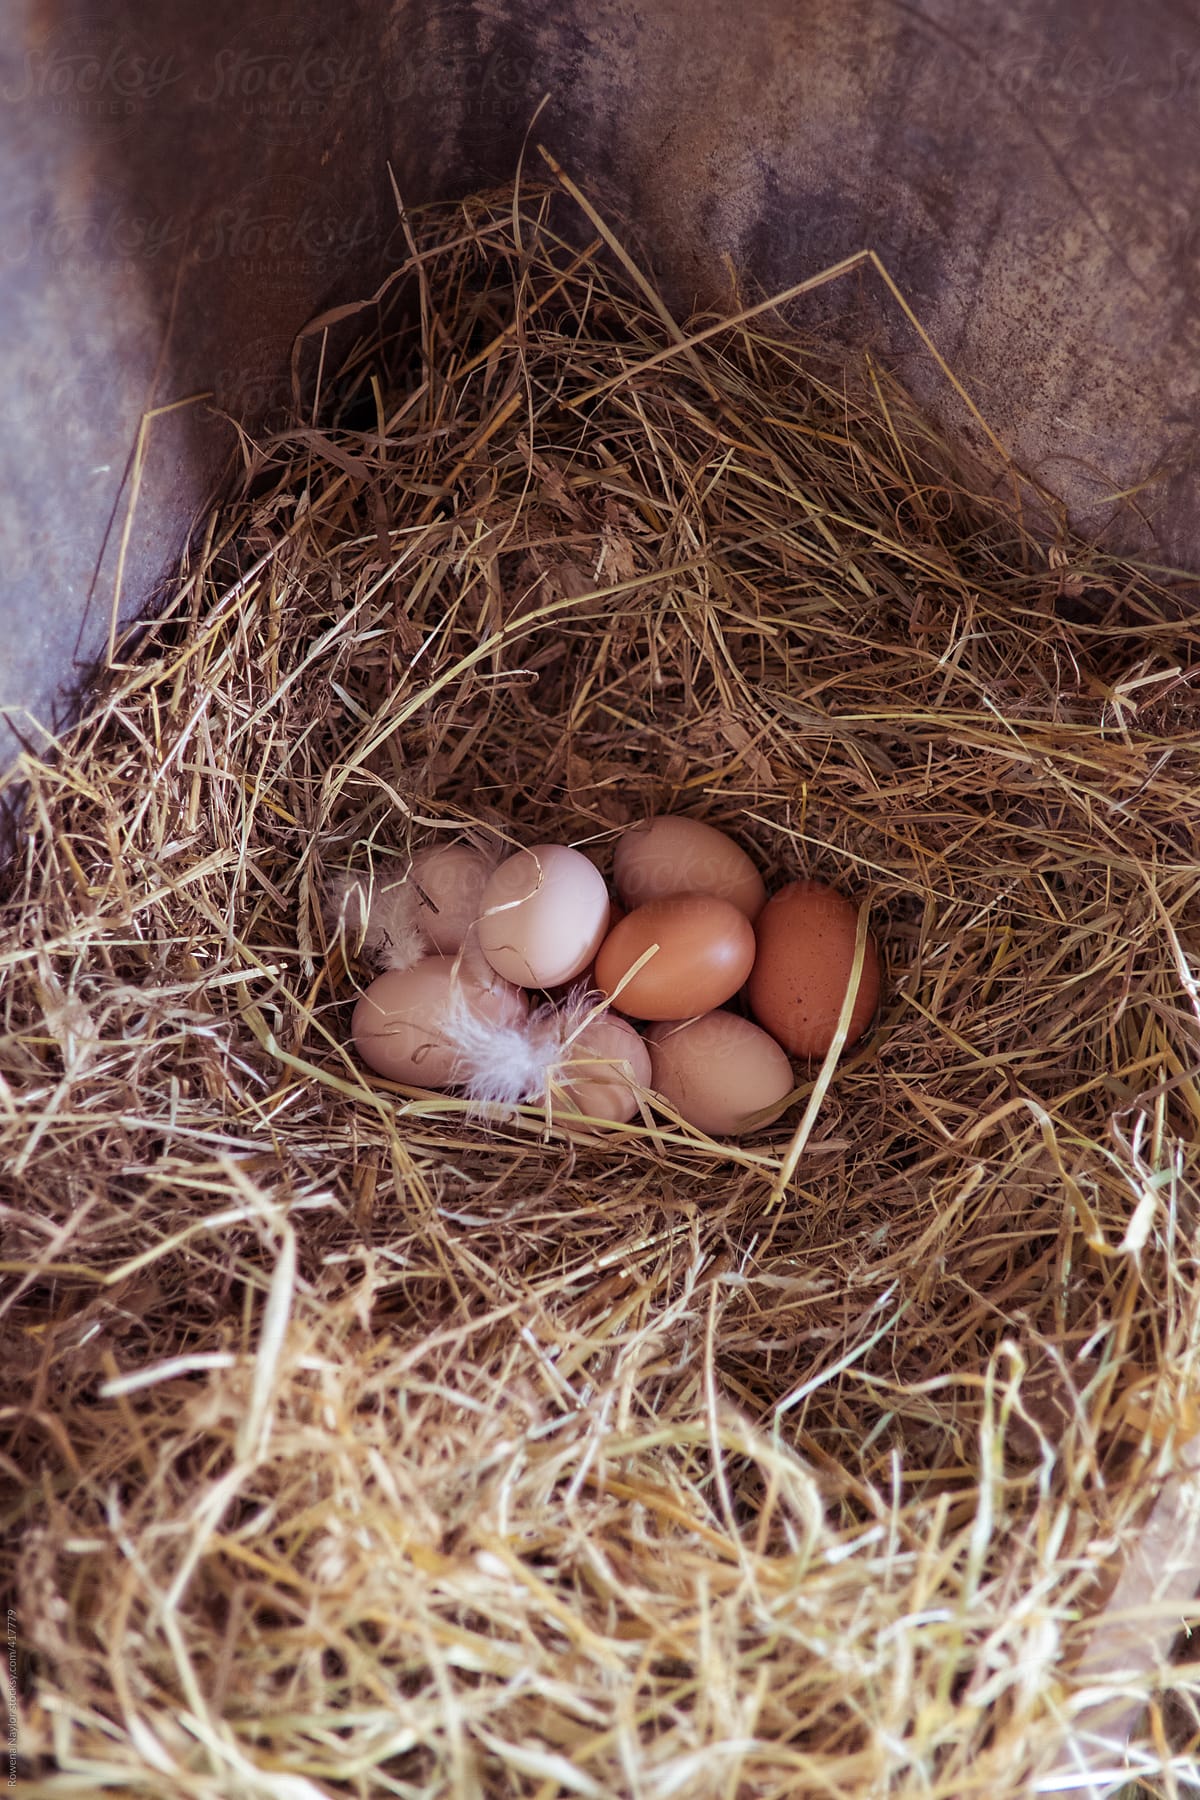 Free Range Chicken Eggs on a nest